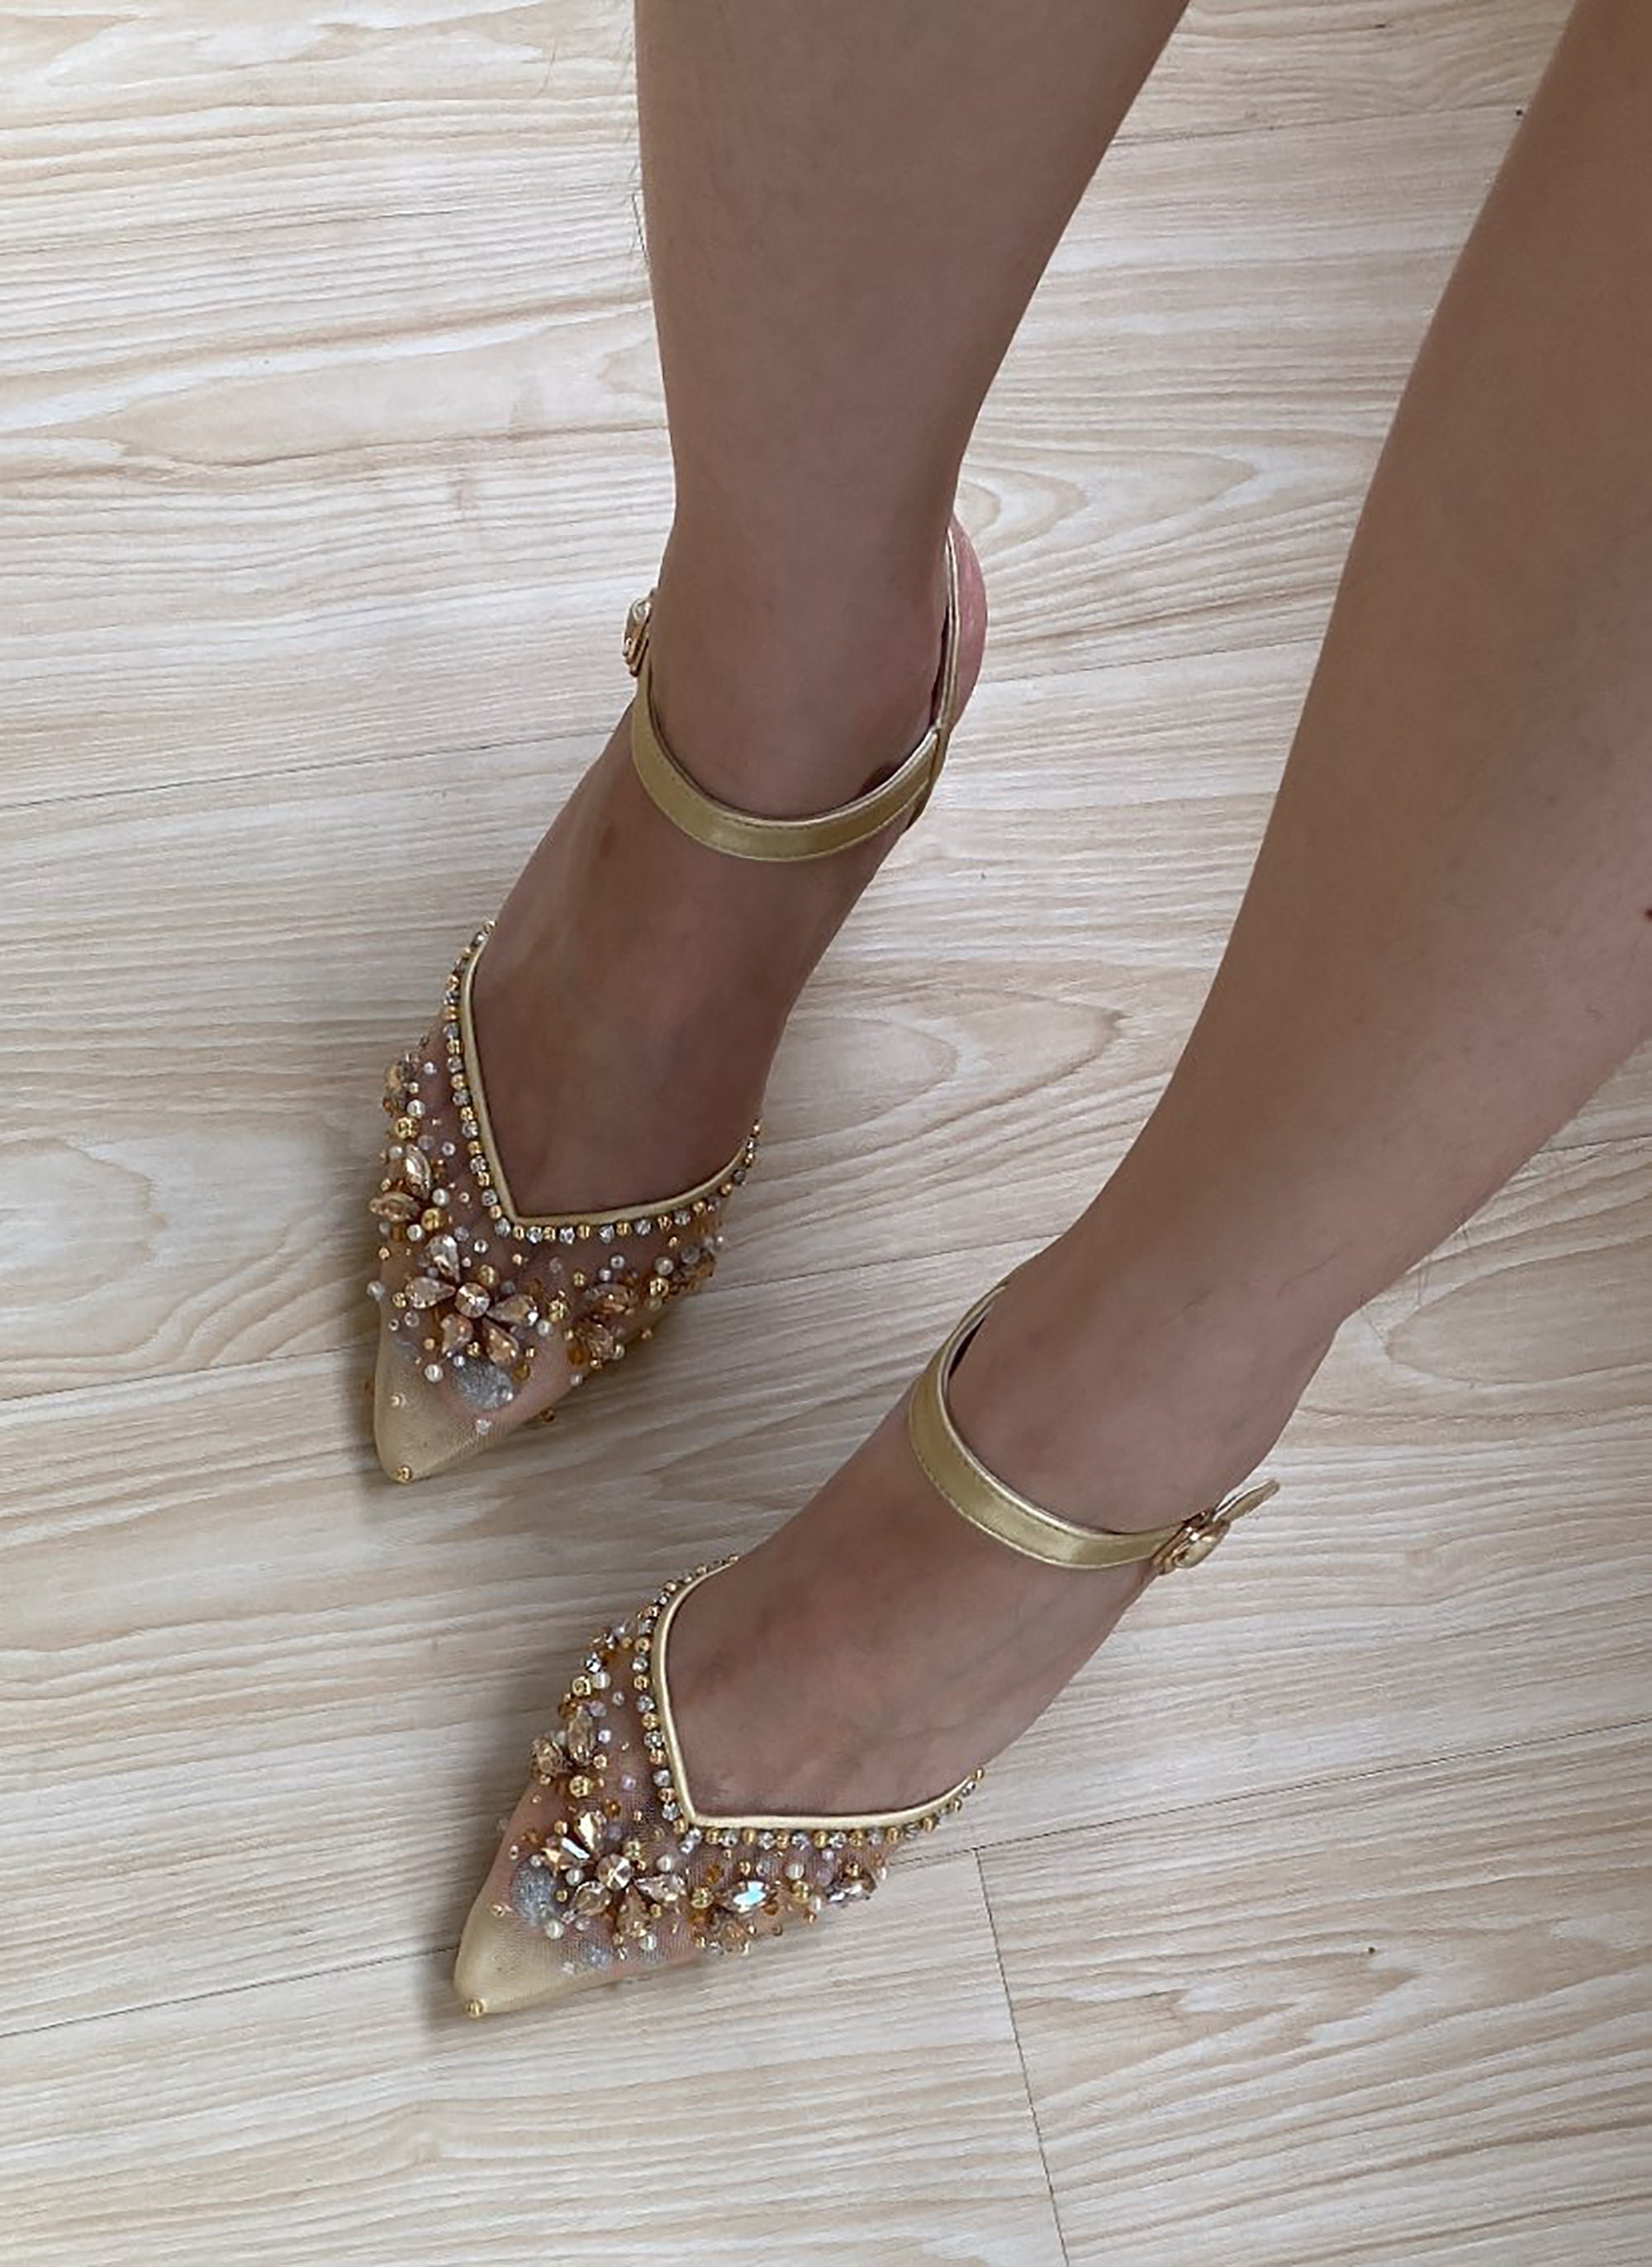 Gold Rhinestone Wedding High Heels, Simple Bridal Sandals, Custom Beaded  Comfort Sandal, Peep Toe Elegant Heels, Classy Floral Low Heels - Etsy